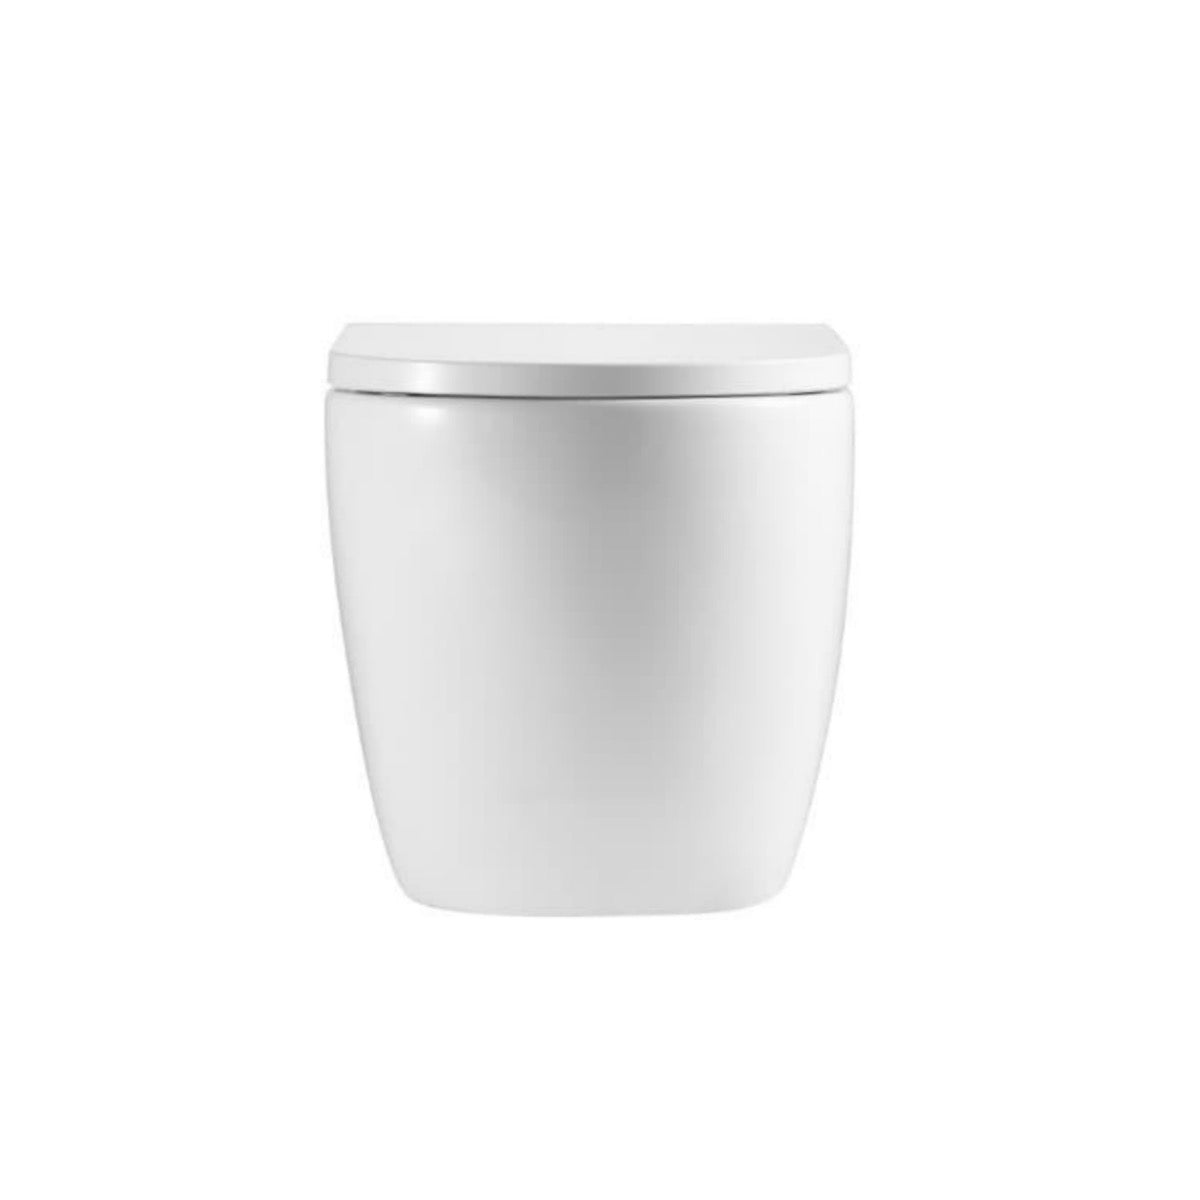 SAT67010RTORP SAT viseča brezrobna WC školjka z WC desko s počasnim zapiranjem